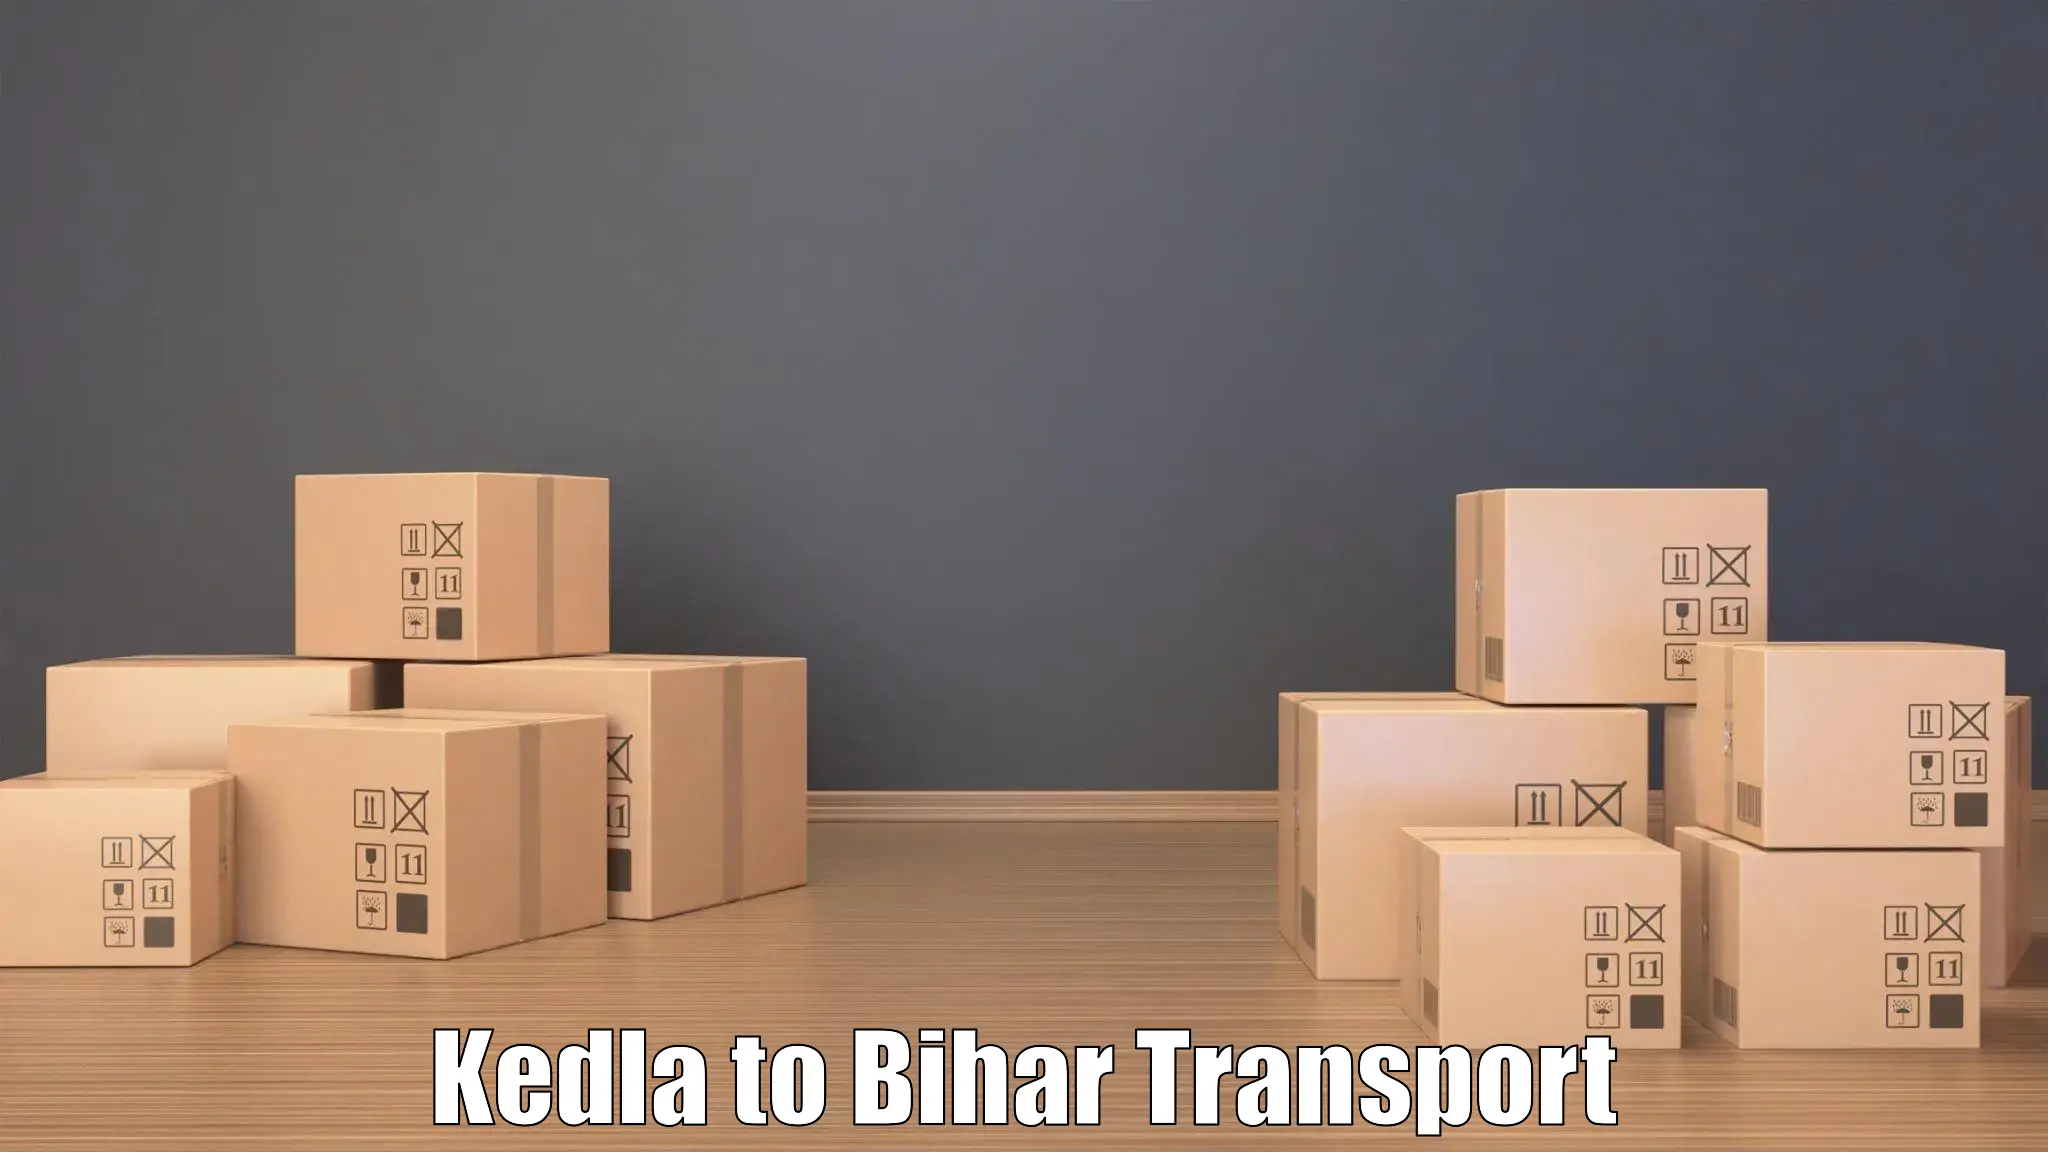 Interstate transport services Kedla to Dehri